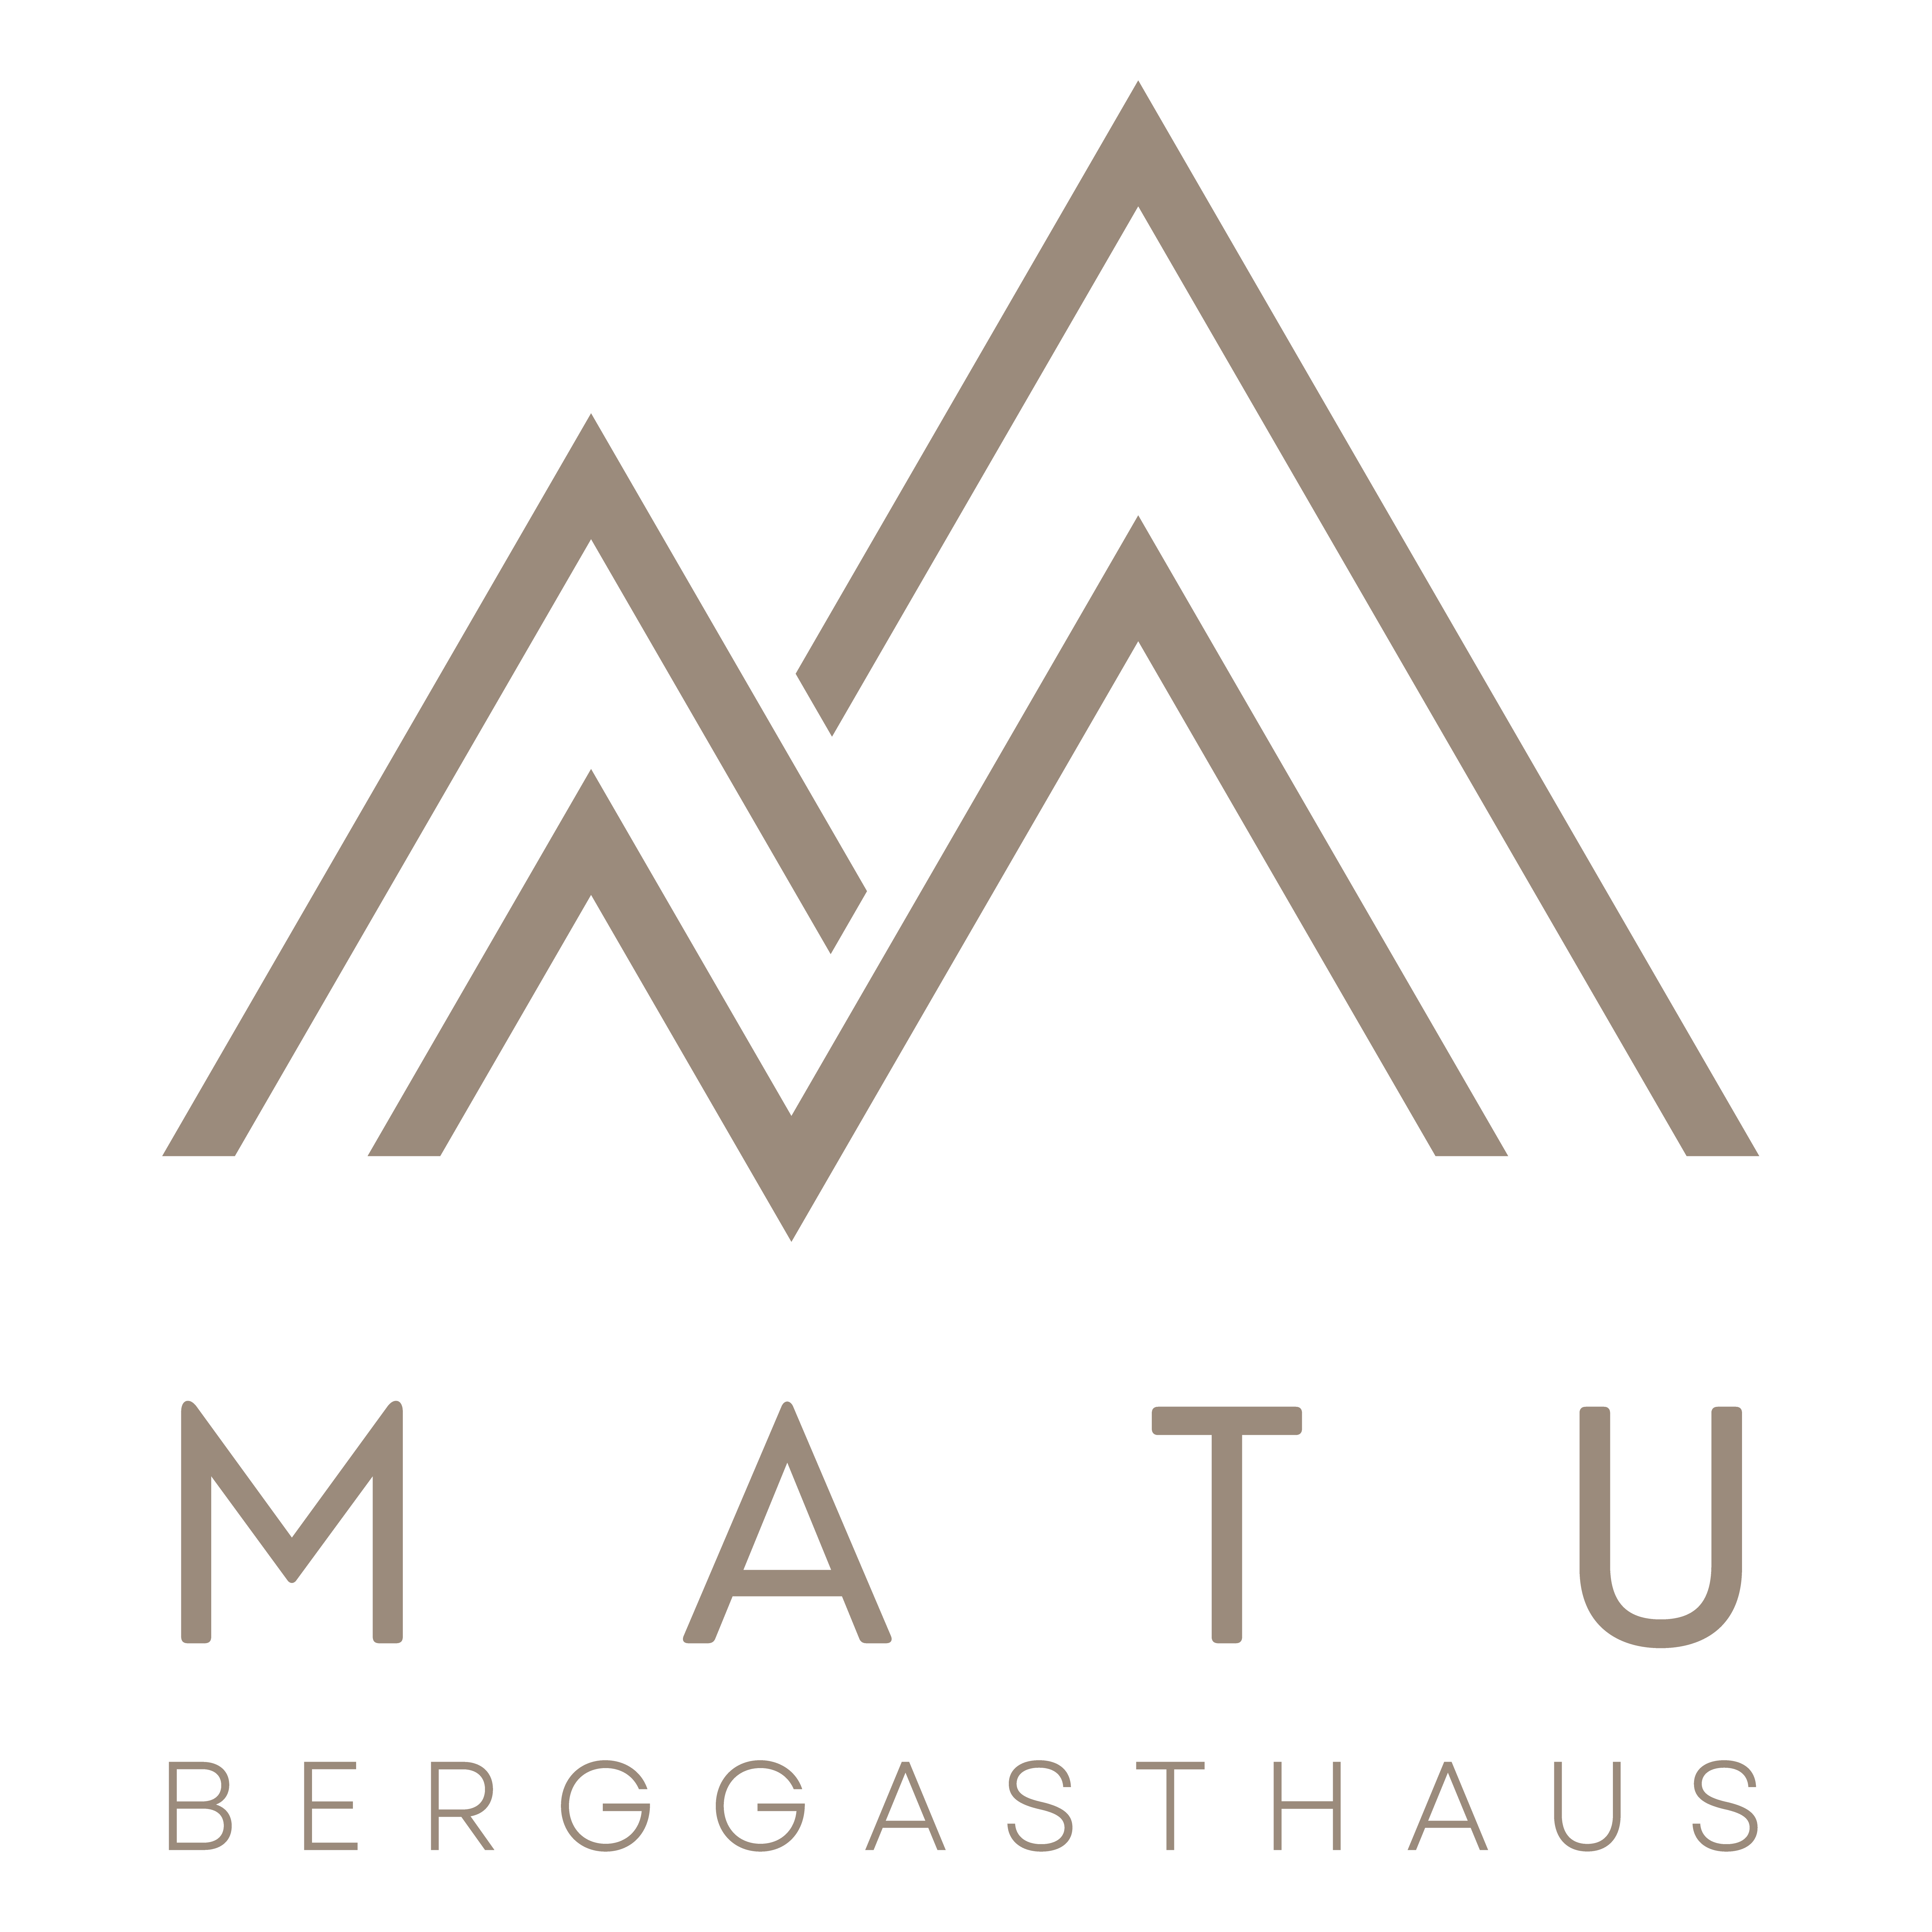 Berggasthaus MATU